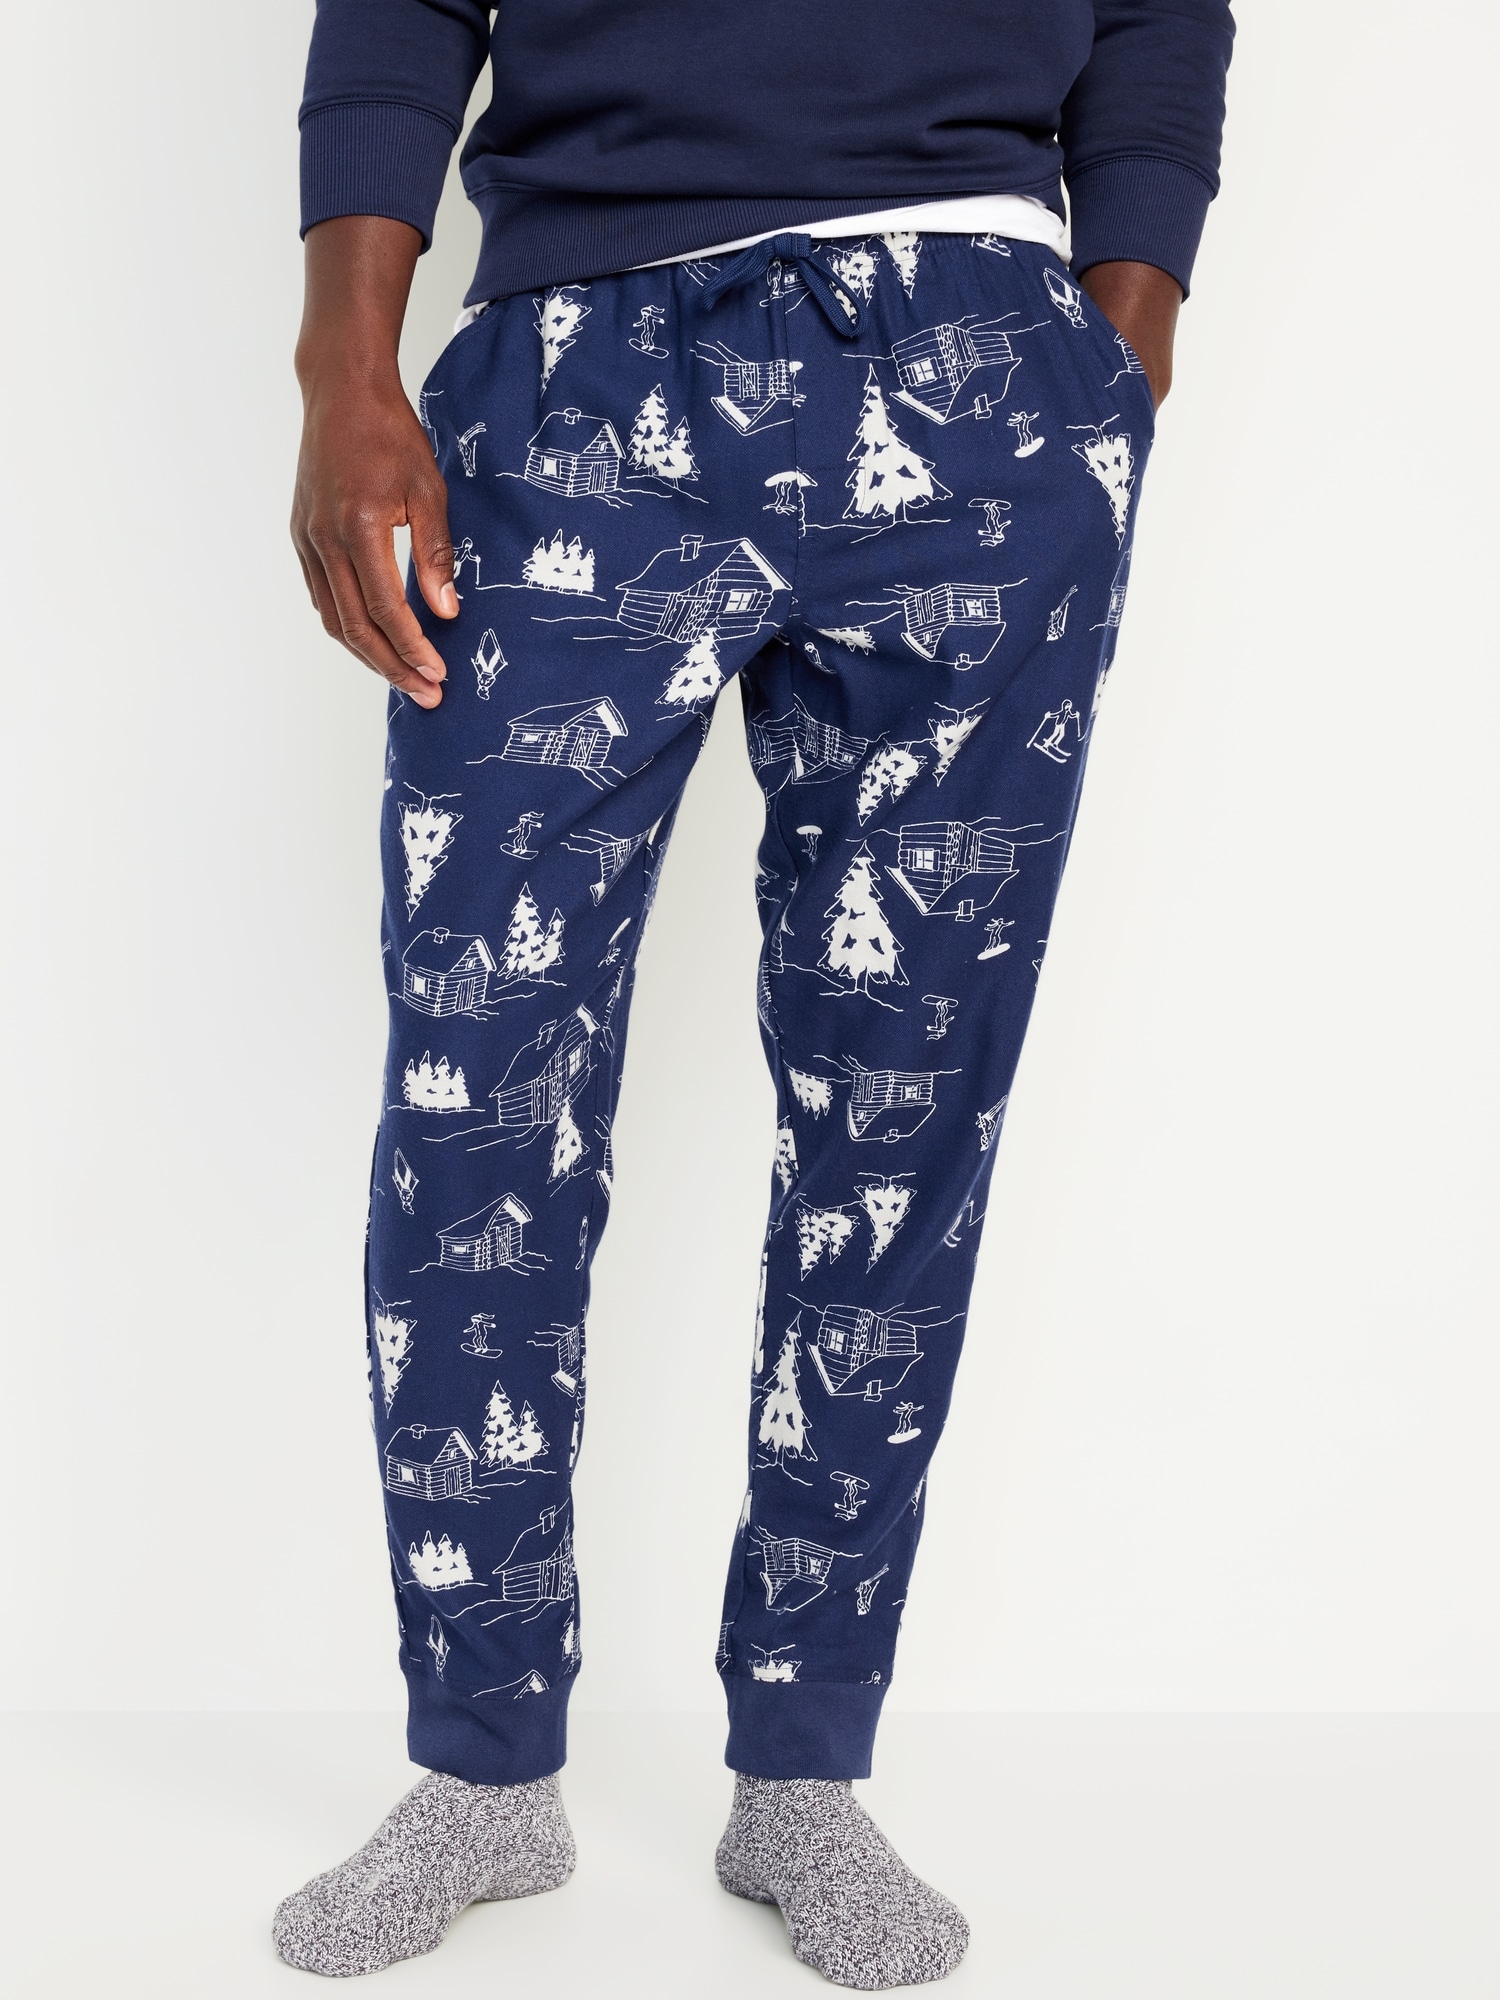 Men's Flannel Jogger Lounge Pants - Charcoal/Blue